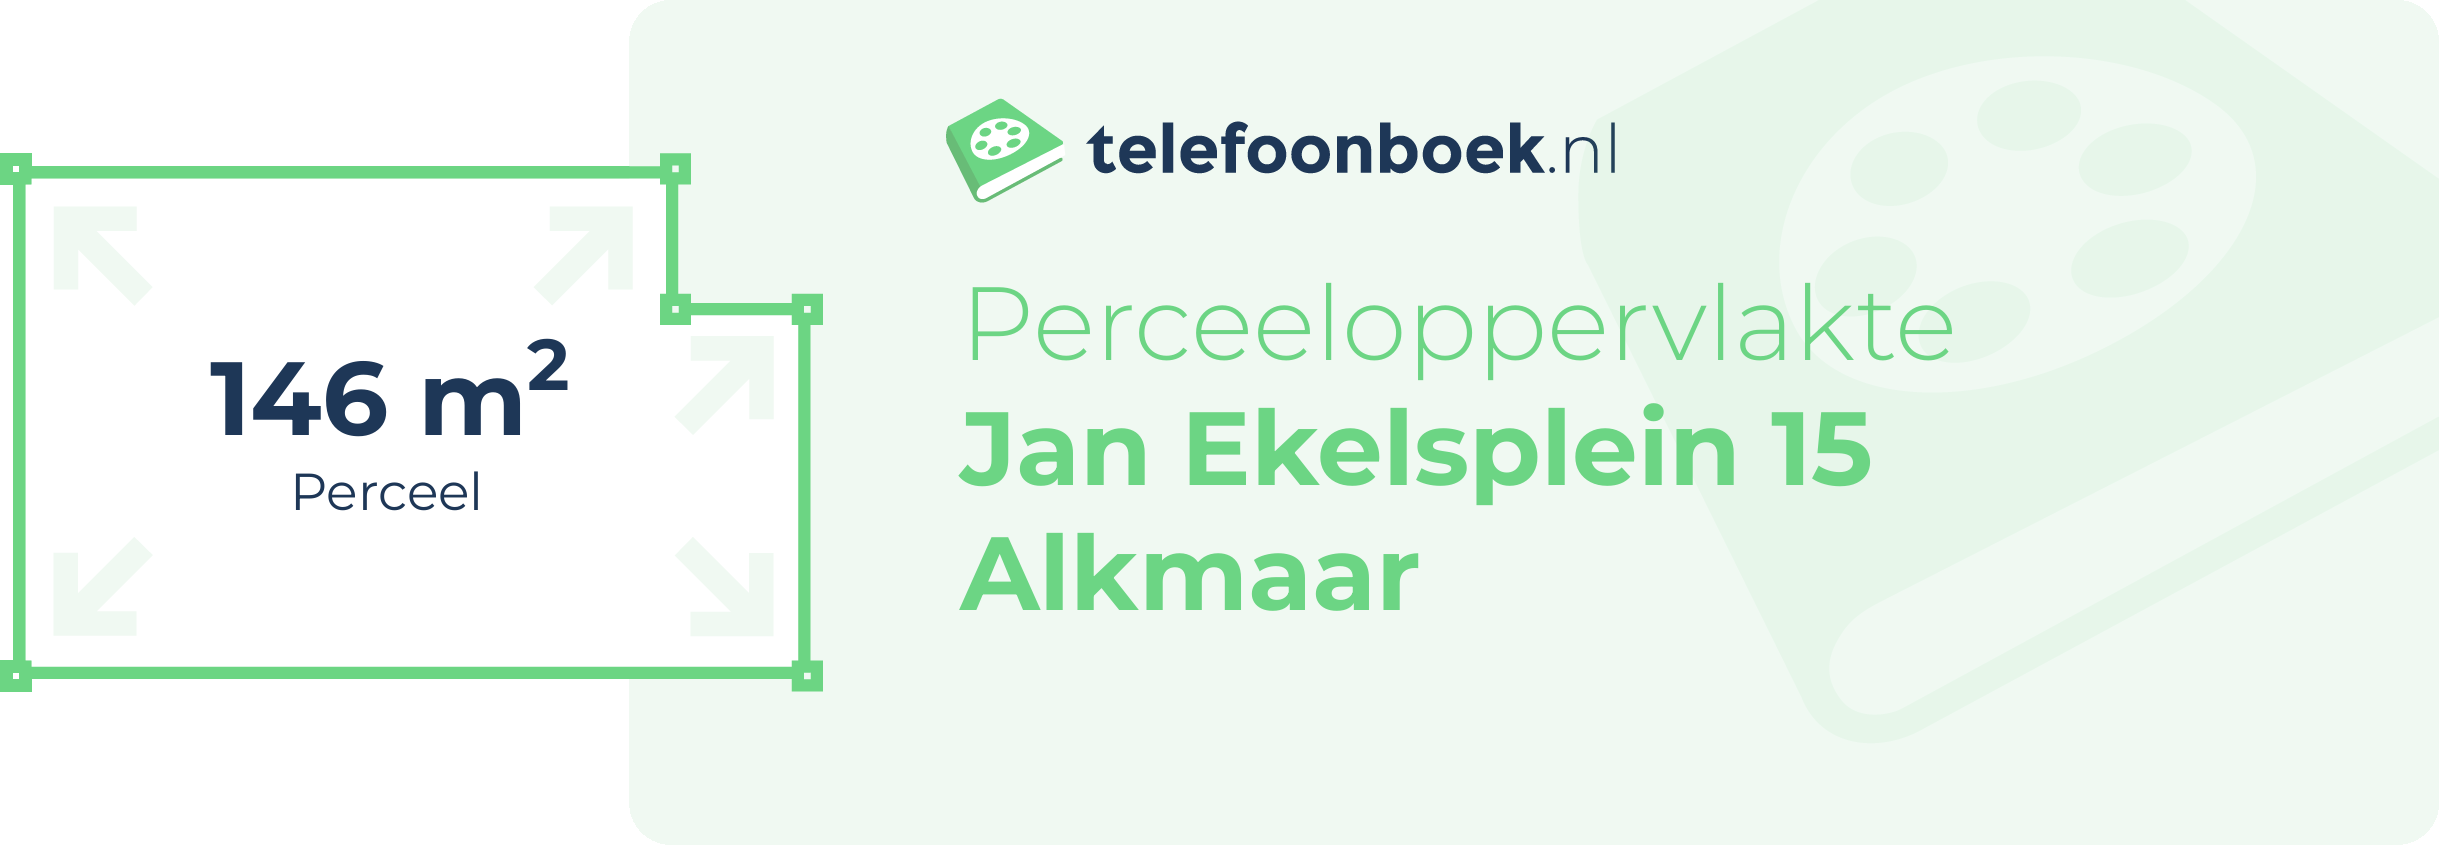 Perceeloppervlakte Jan Ekelsplein 15 Alkmaar